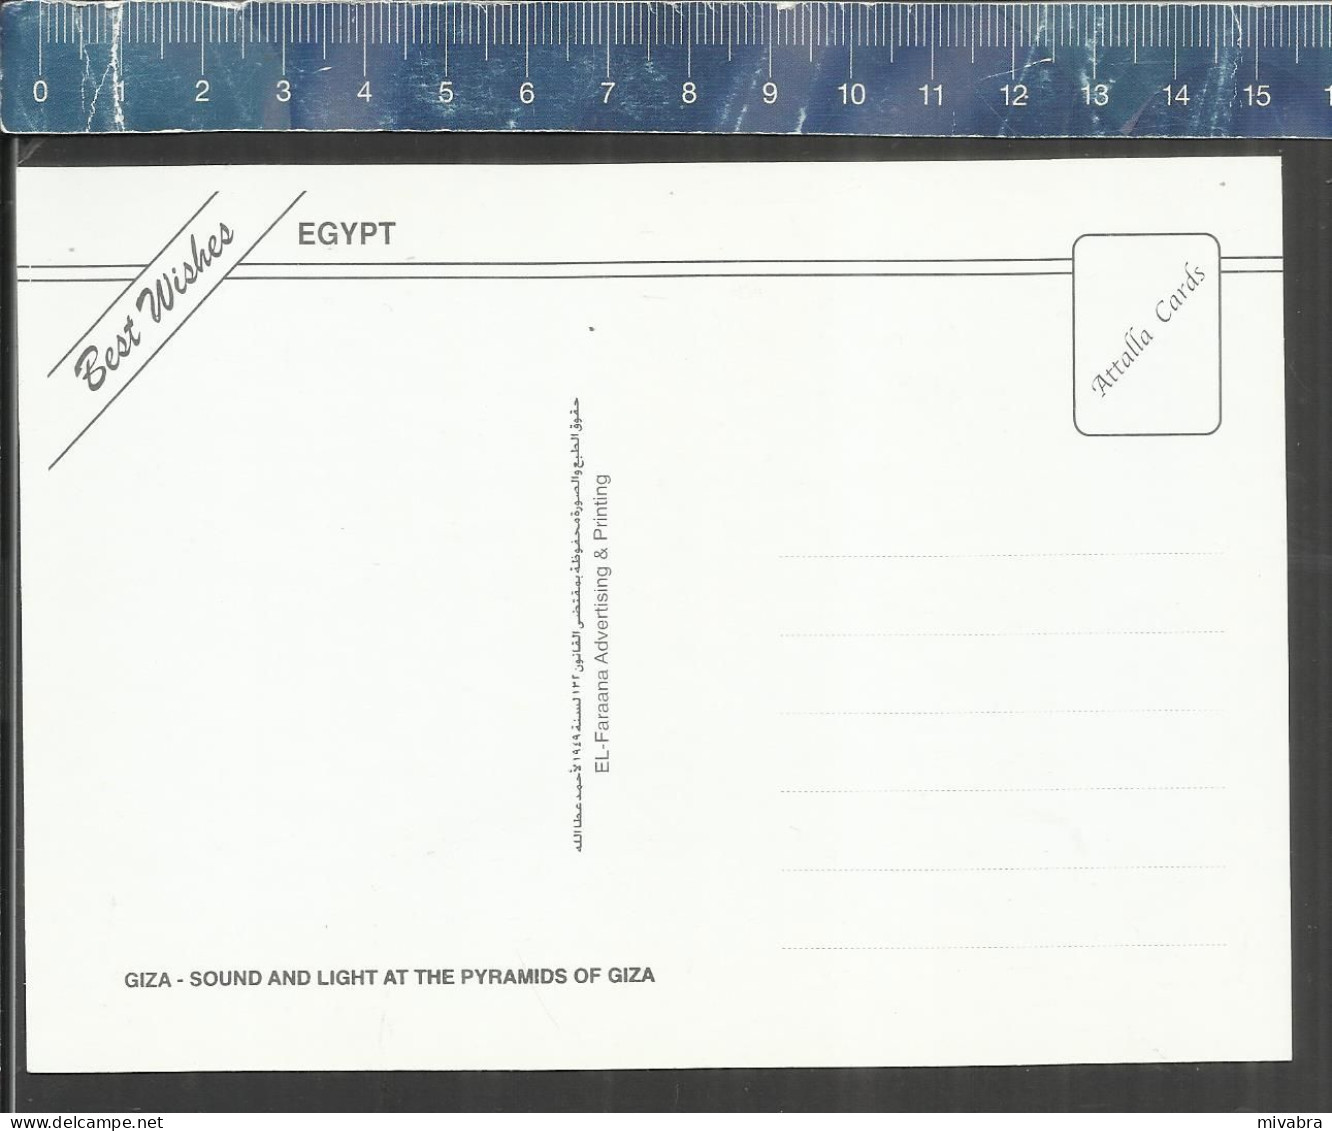 GIZA - PYRAMIDS - AHMED ATTALLAH ROUND THE PYRAMIDS ( CAMELS ) - ATTALIA CARDS - Pyramids